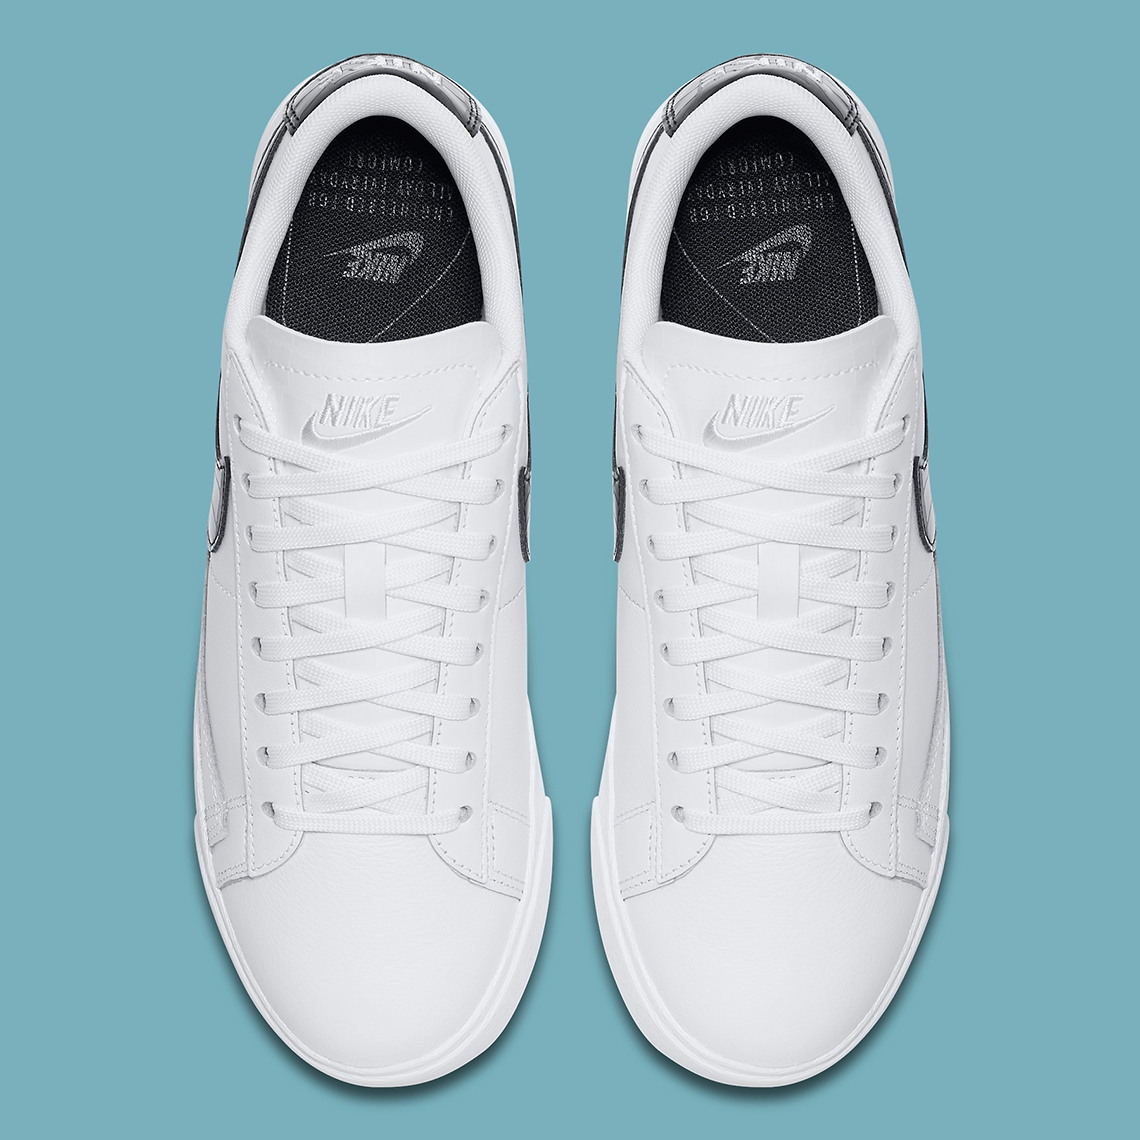 Nike Blazer Low White Black Croc Bq0033 100 5